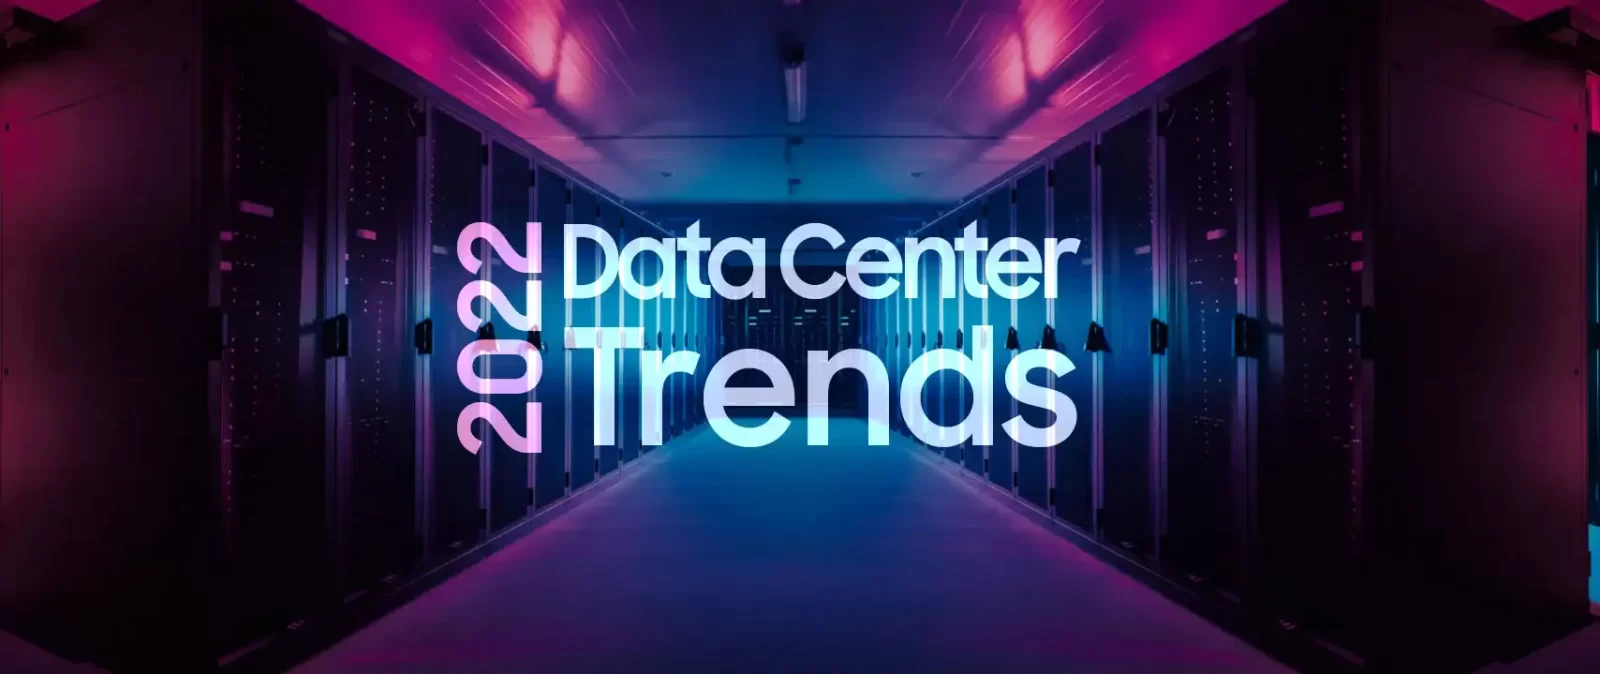 ترندهای دیتاسنتر (مرکز داده) در سال 2022 - Data center trends in 2022